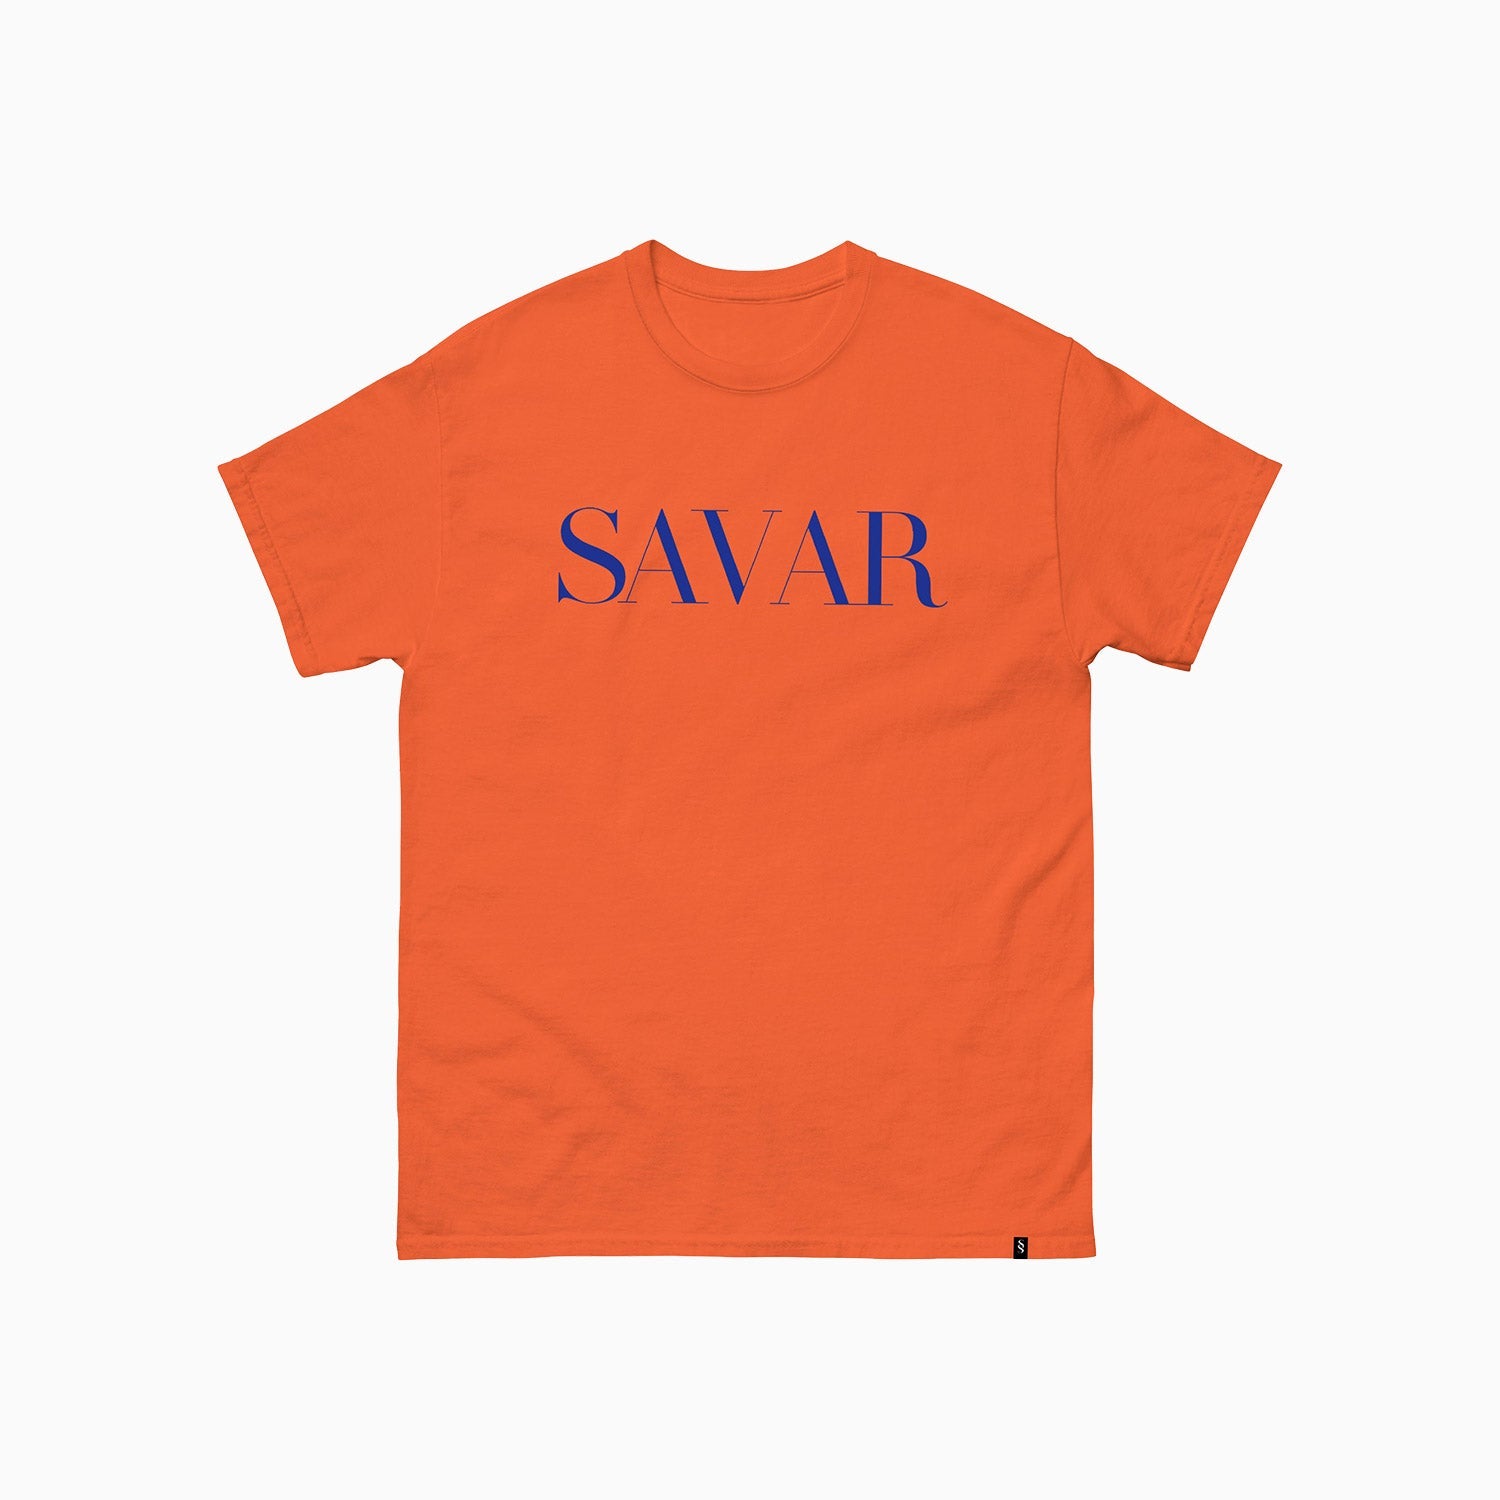 basic-design-printed-crew-neck-orange-t-shirt-for-men-st105-852